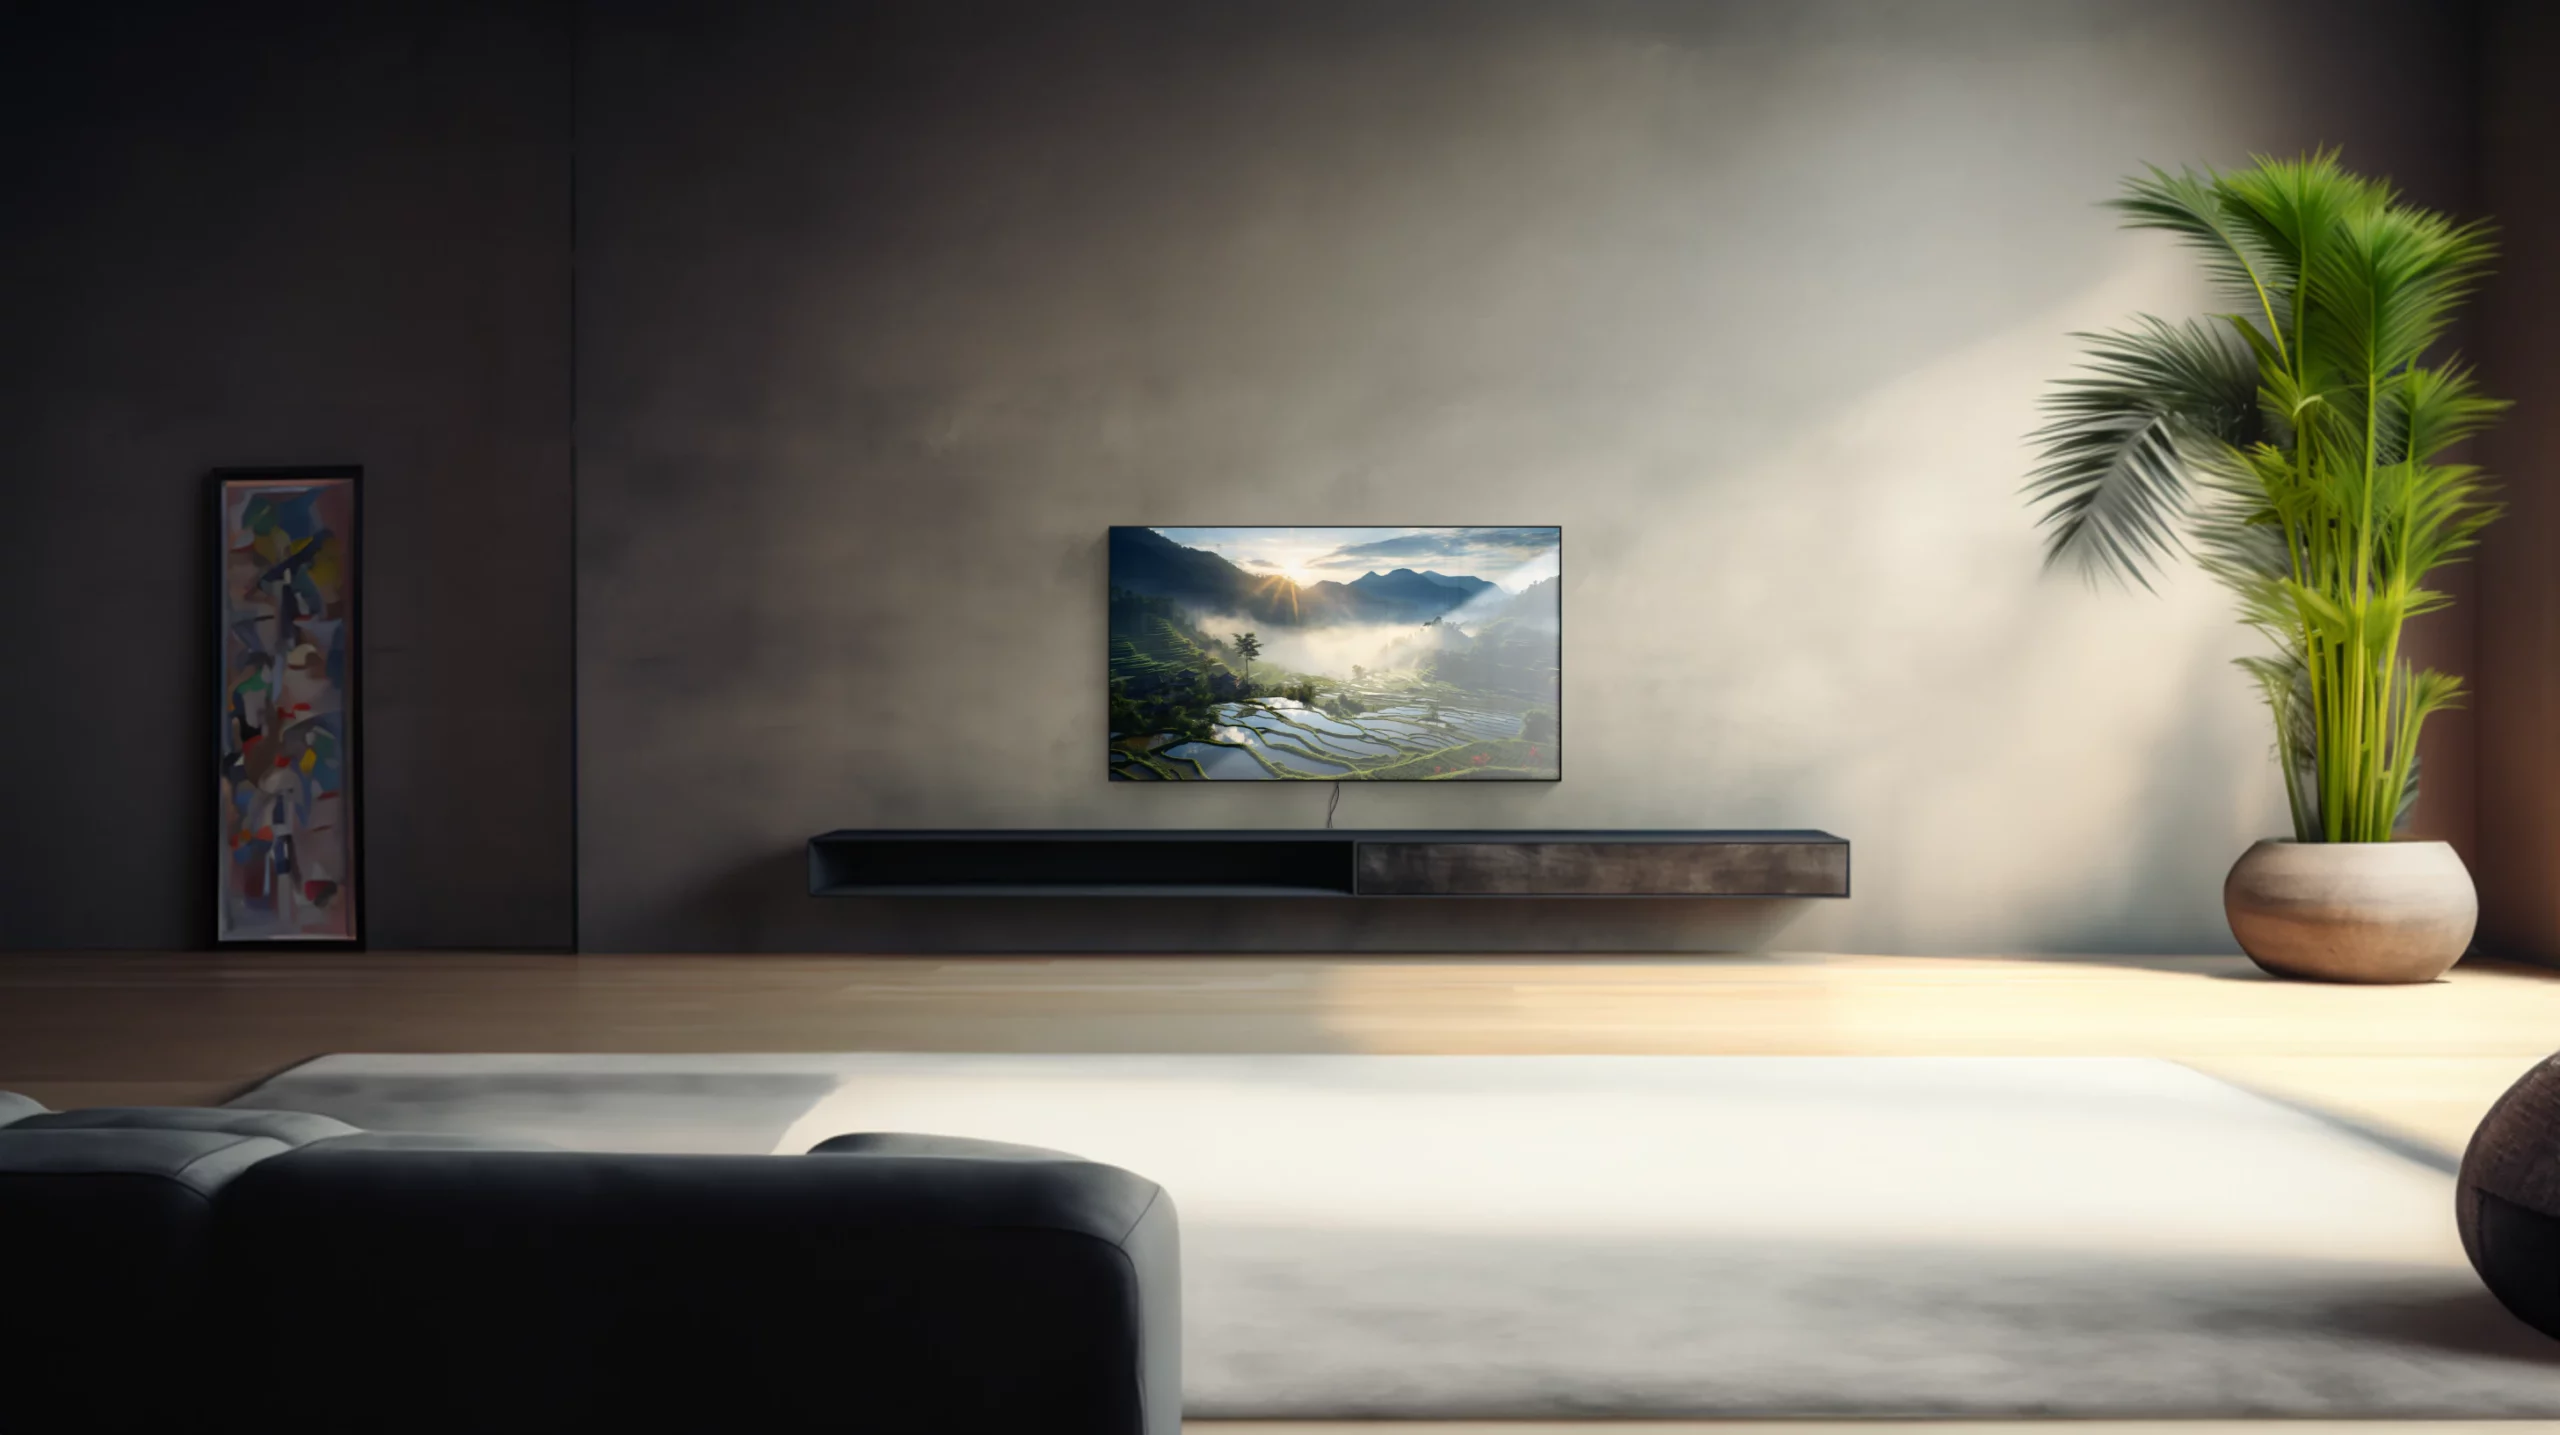 Ein 65 Zoll Fernseher in einem modernen Wohnzimmer. Auf dem Display ist zu erkennen, dass die Oberfläche vom Fernseher spiegelt. Der Fernseher ist an der Wand montiert und Kabel sind unterhalb des Gerätes zu sehen.